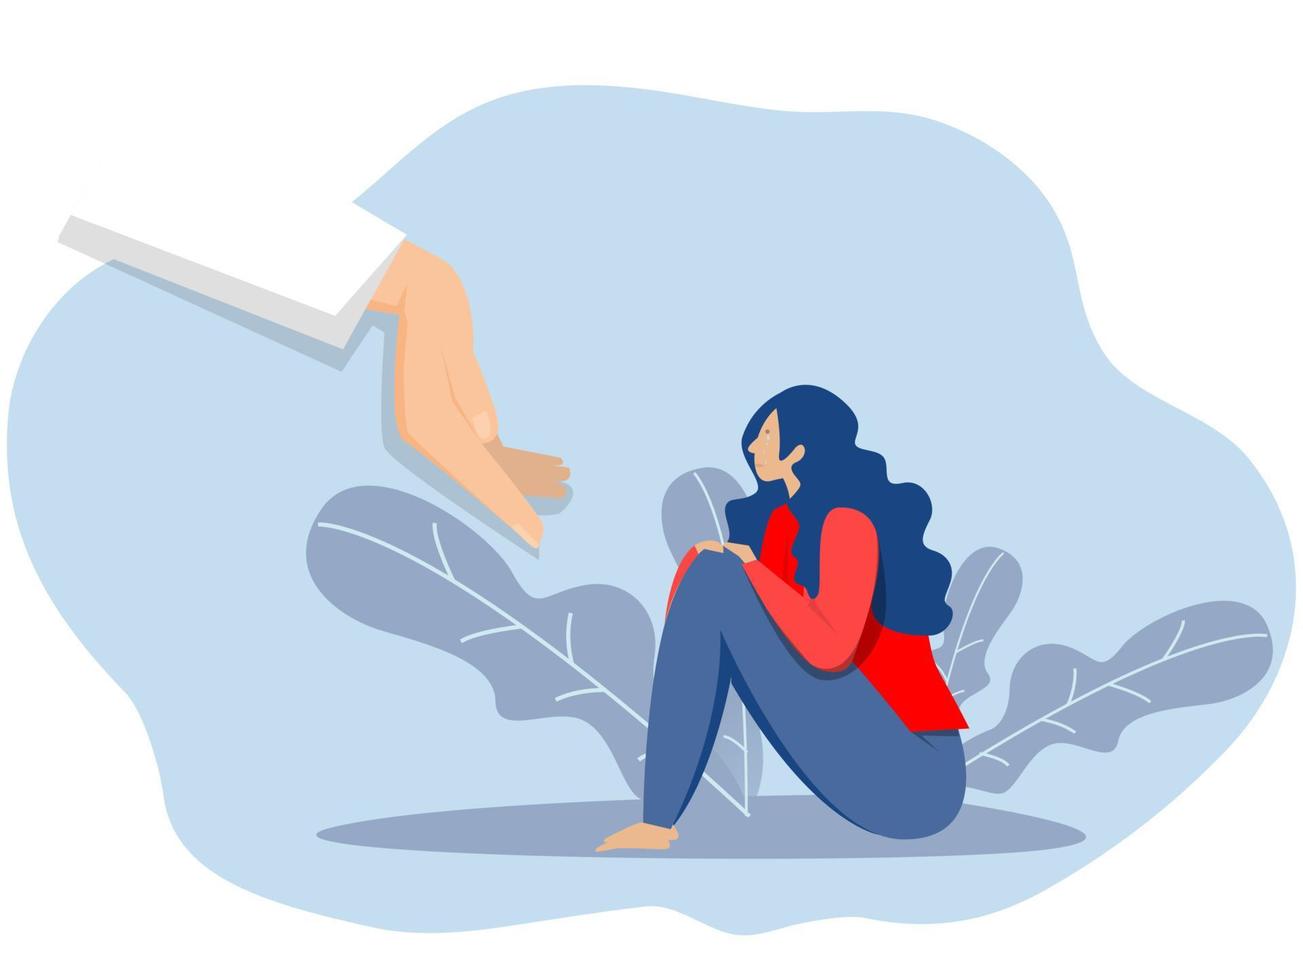 psychologisch ondersteuning concept jong vrouw zittend depressief of ongelukkig met psychotherapie helpen en ondersteuning begeleiding sessie vector illustratie